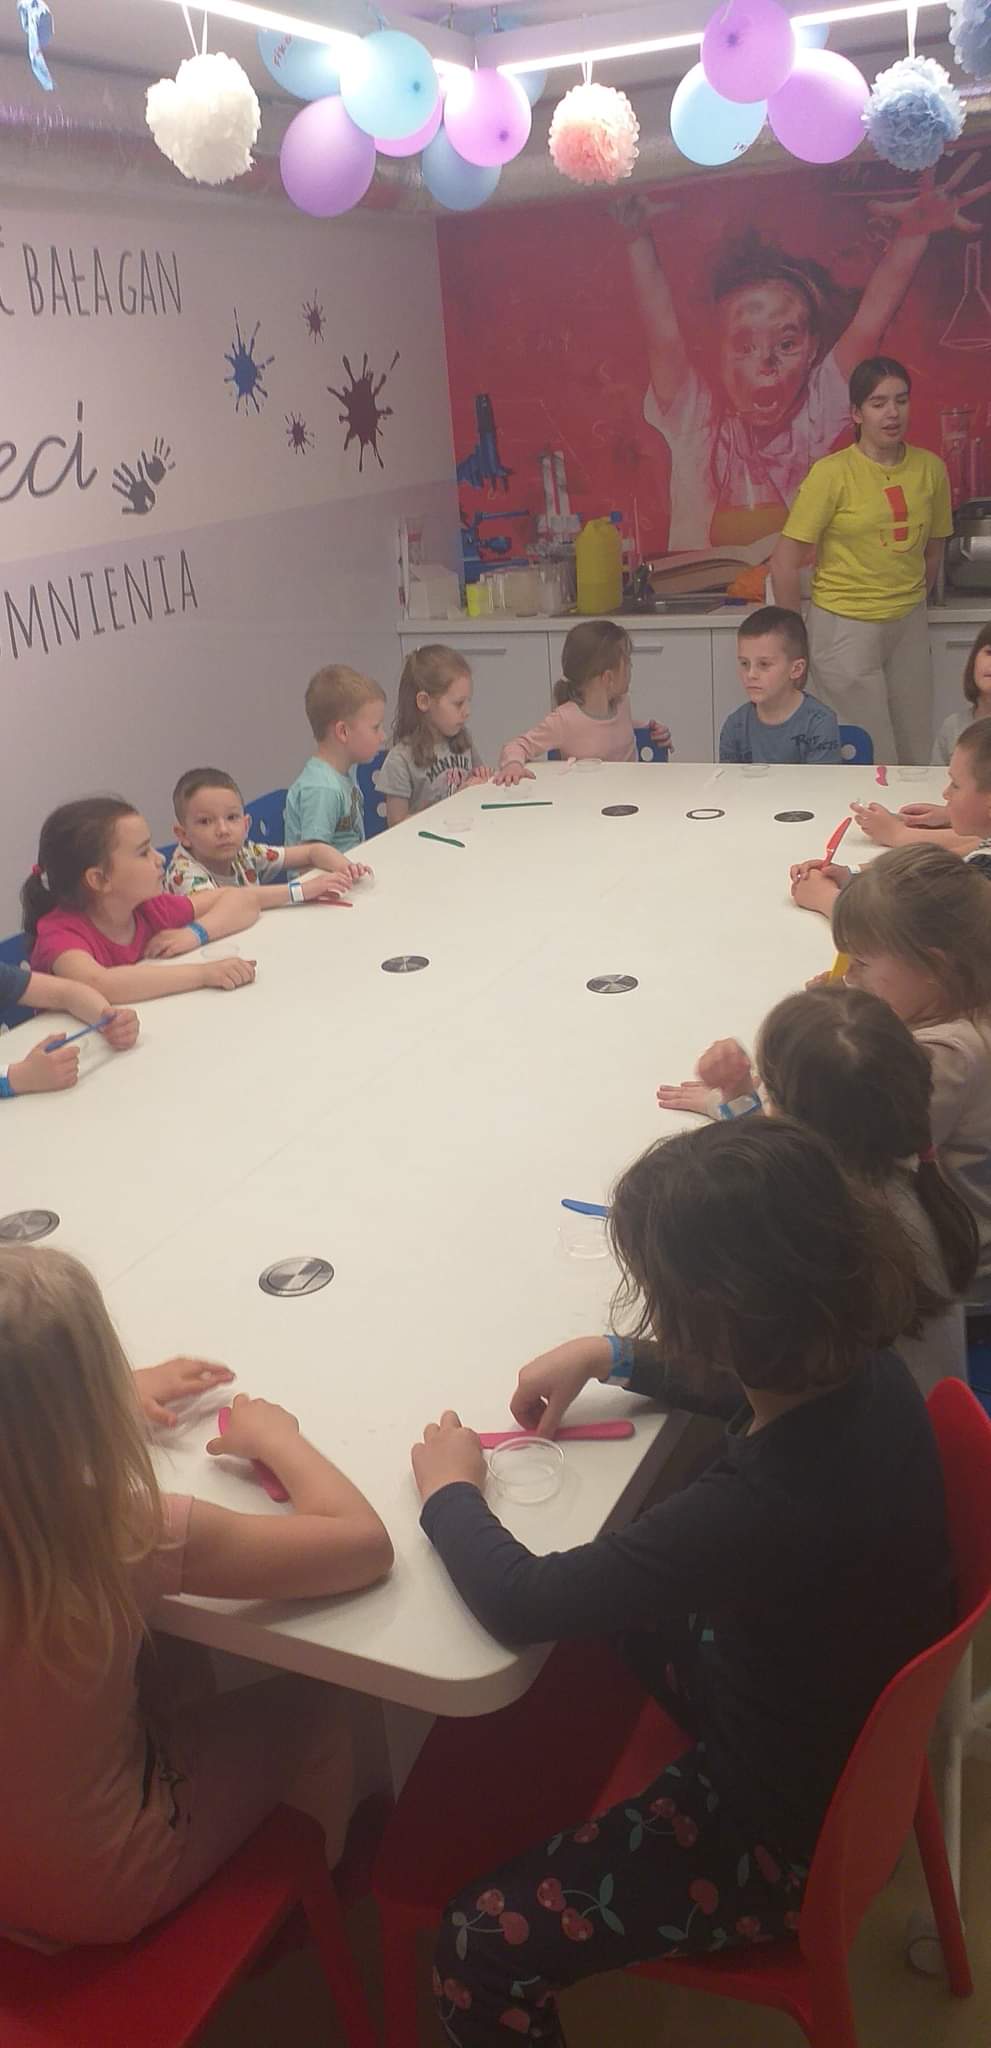 Dzieci siedzą przy długim biały stole. Przed mini leżą plastikowe noże. Obok chodzi kobieta w żółtej bluzce